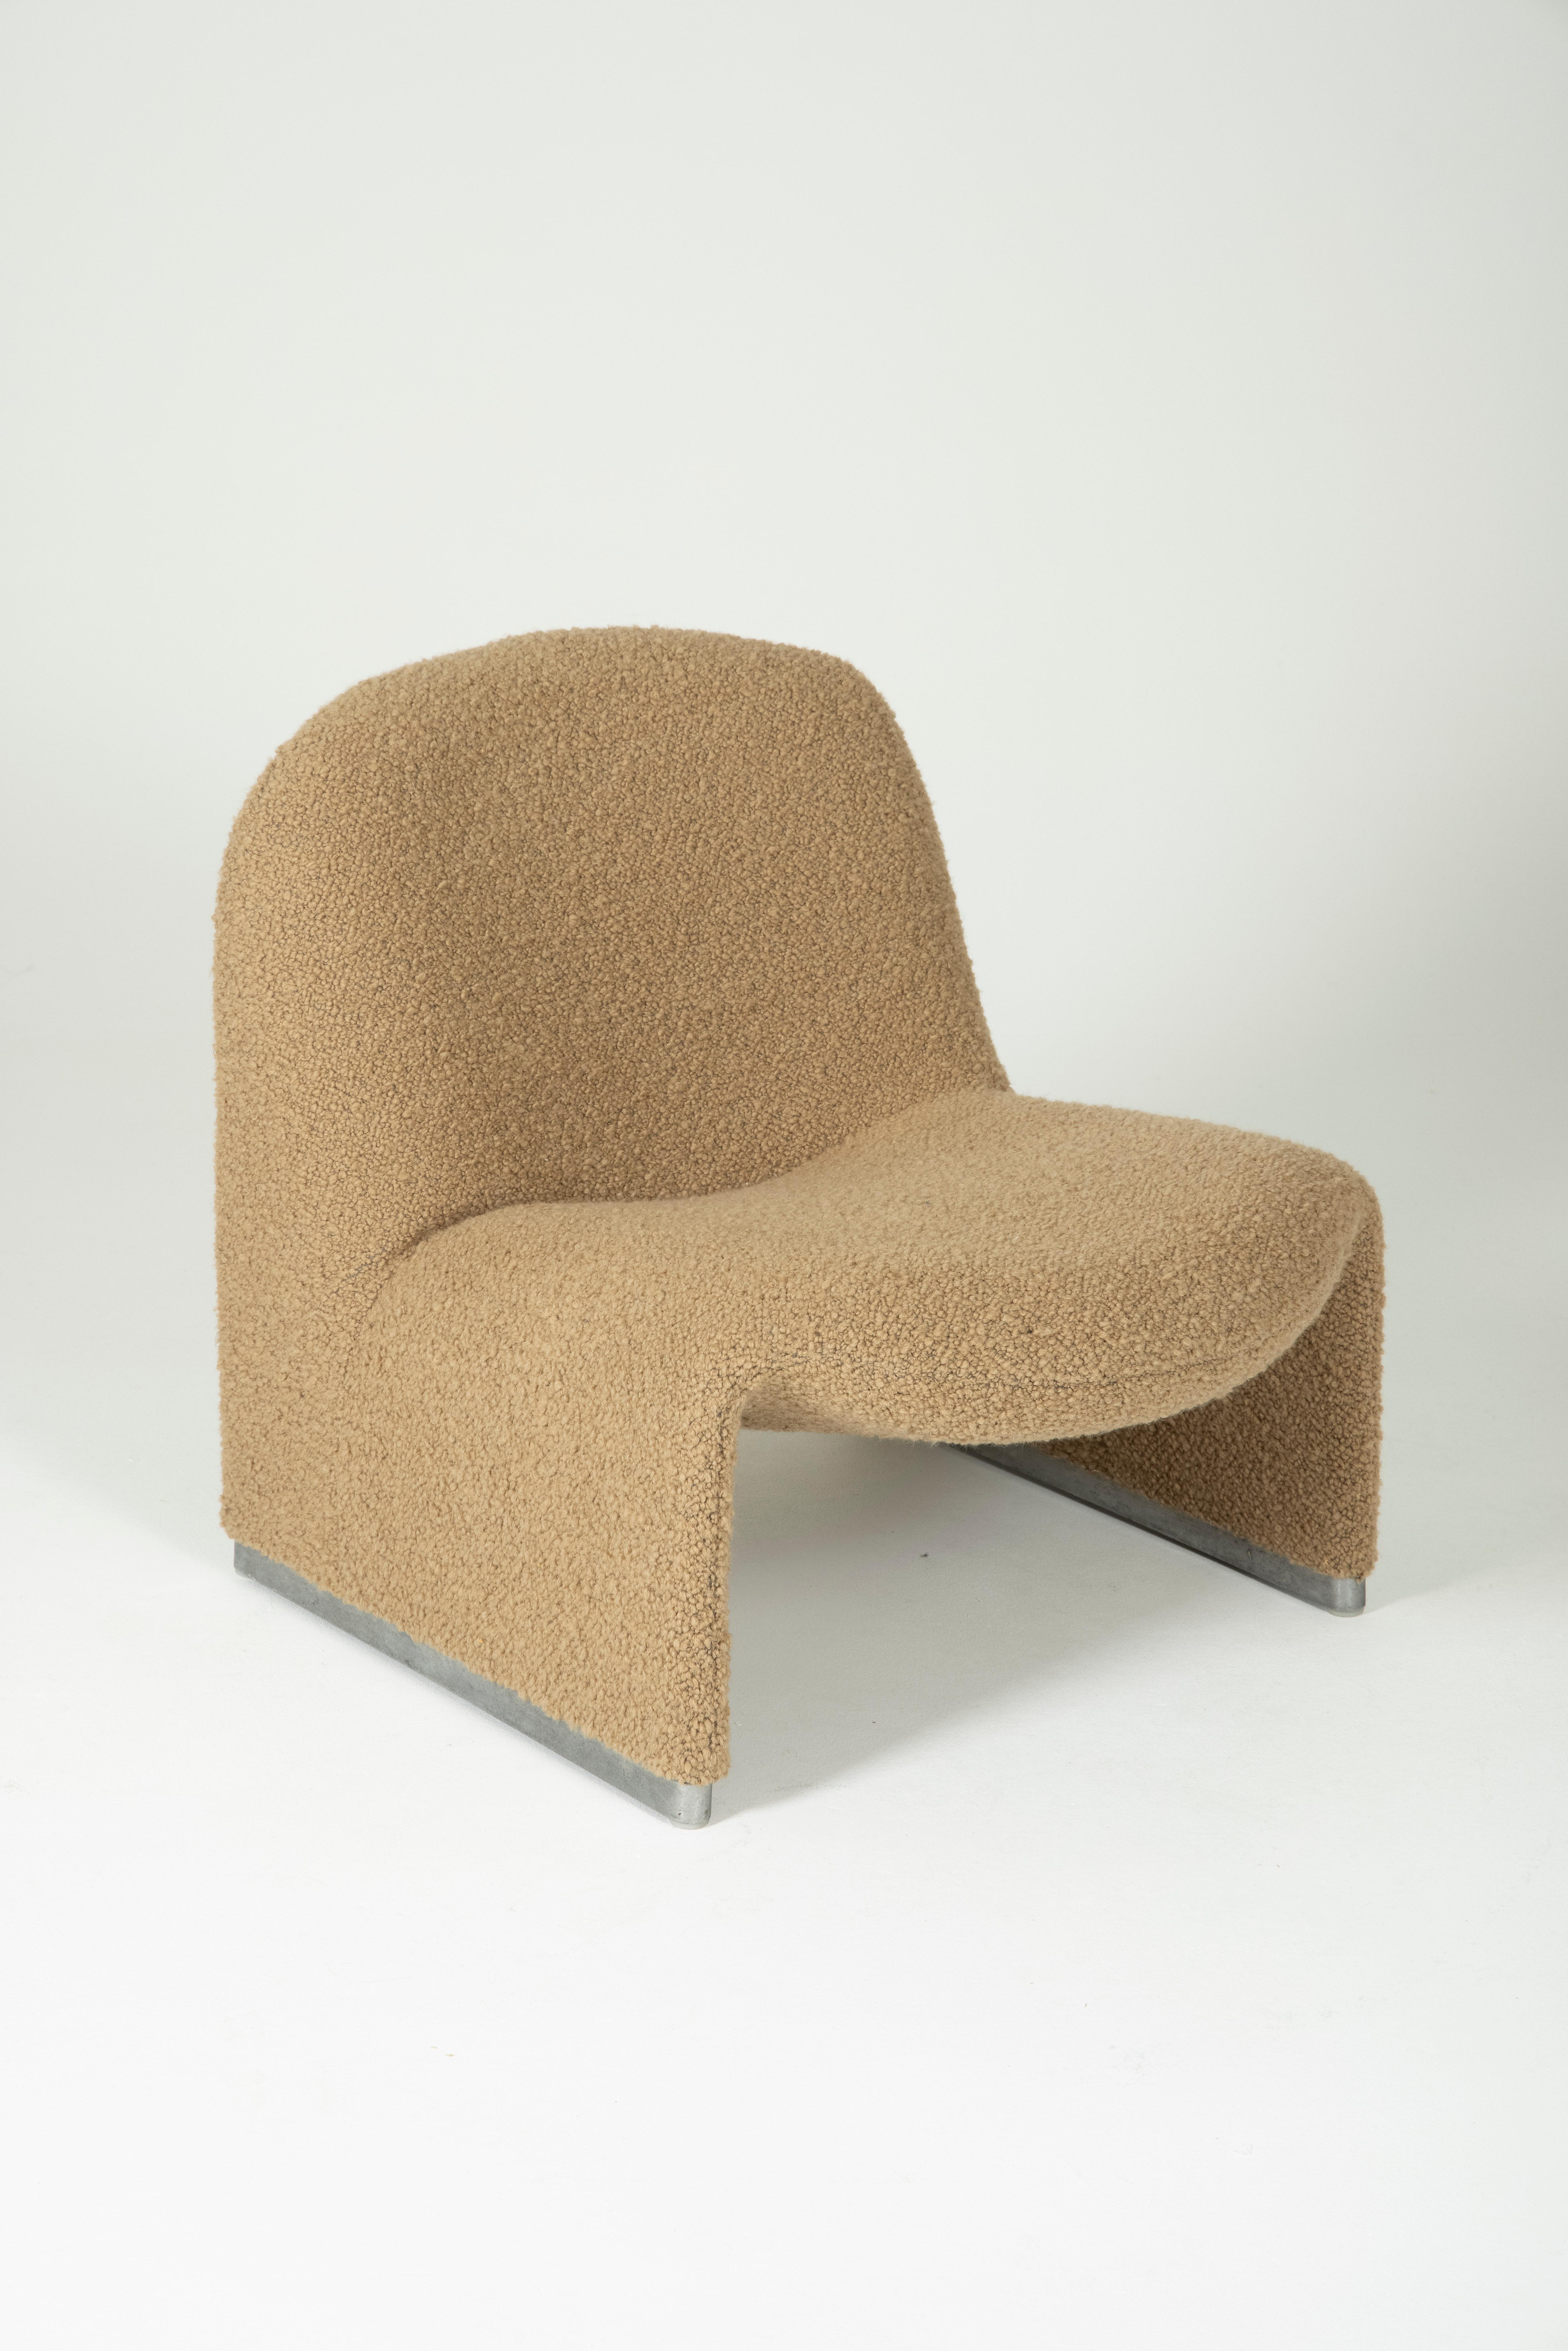 Sessel Alky des italienischen Designers Giancarlo Piretti für Artifort, 1970er Jahre. Die Struktur ist mit thermogeformtem Schaumstoff überzogen, und der Sockel ist aus Aluminium gefertigt. Guter Zustand. Dieser Sessel wurde mit einem hochwertigen